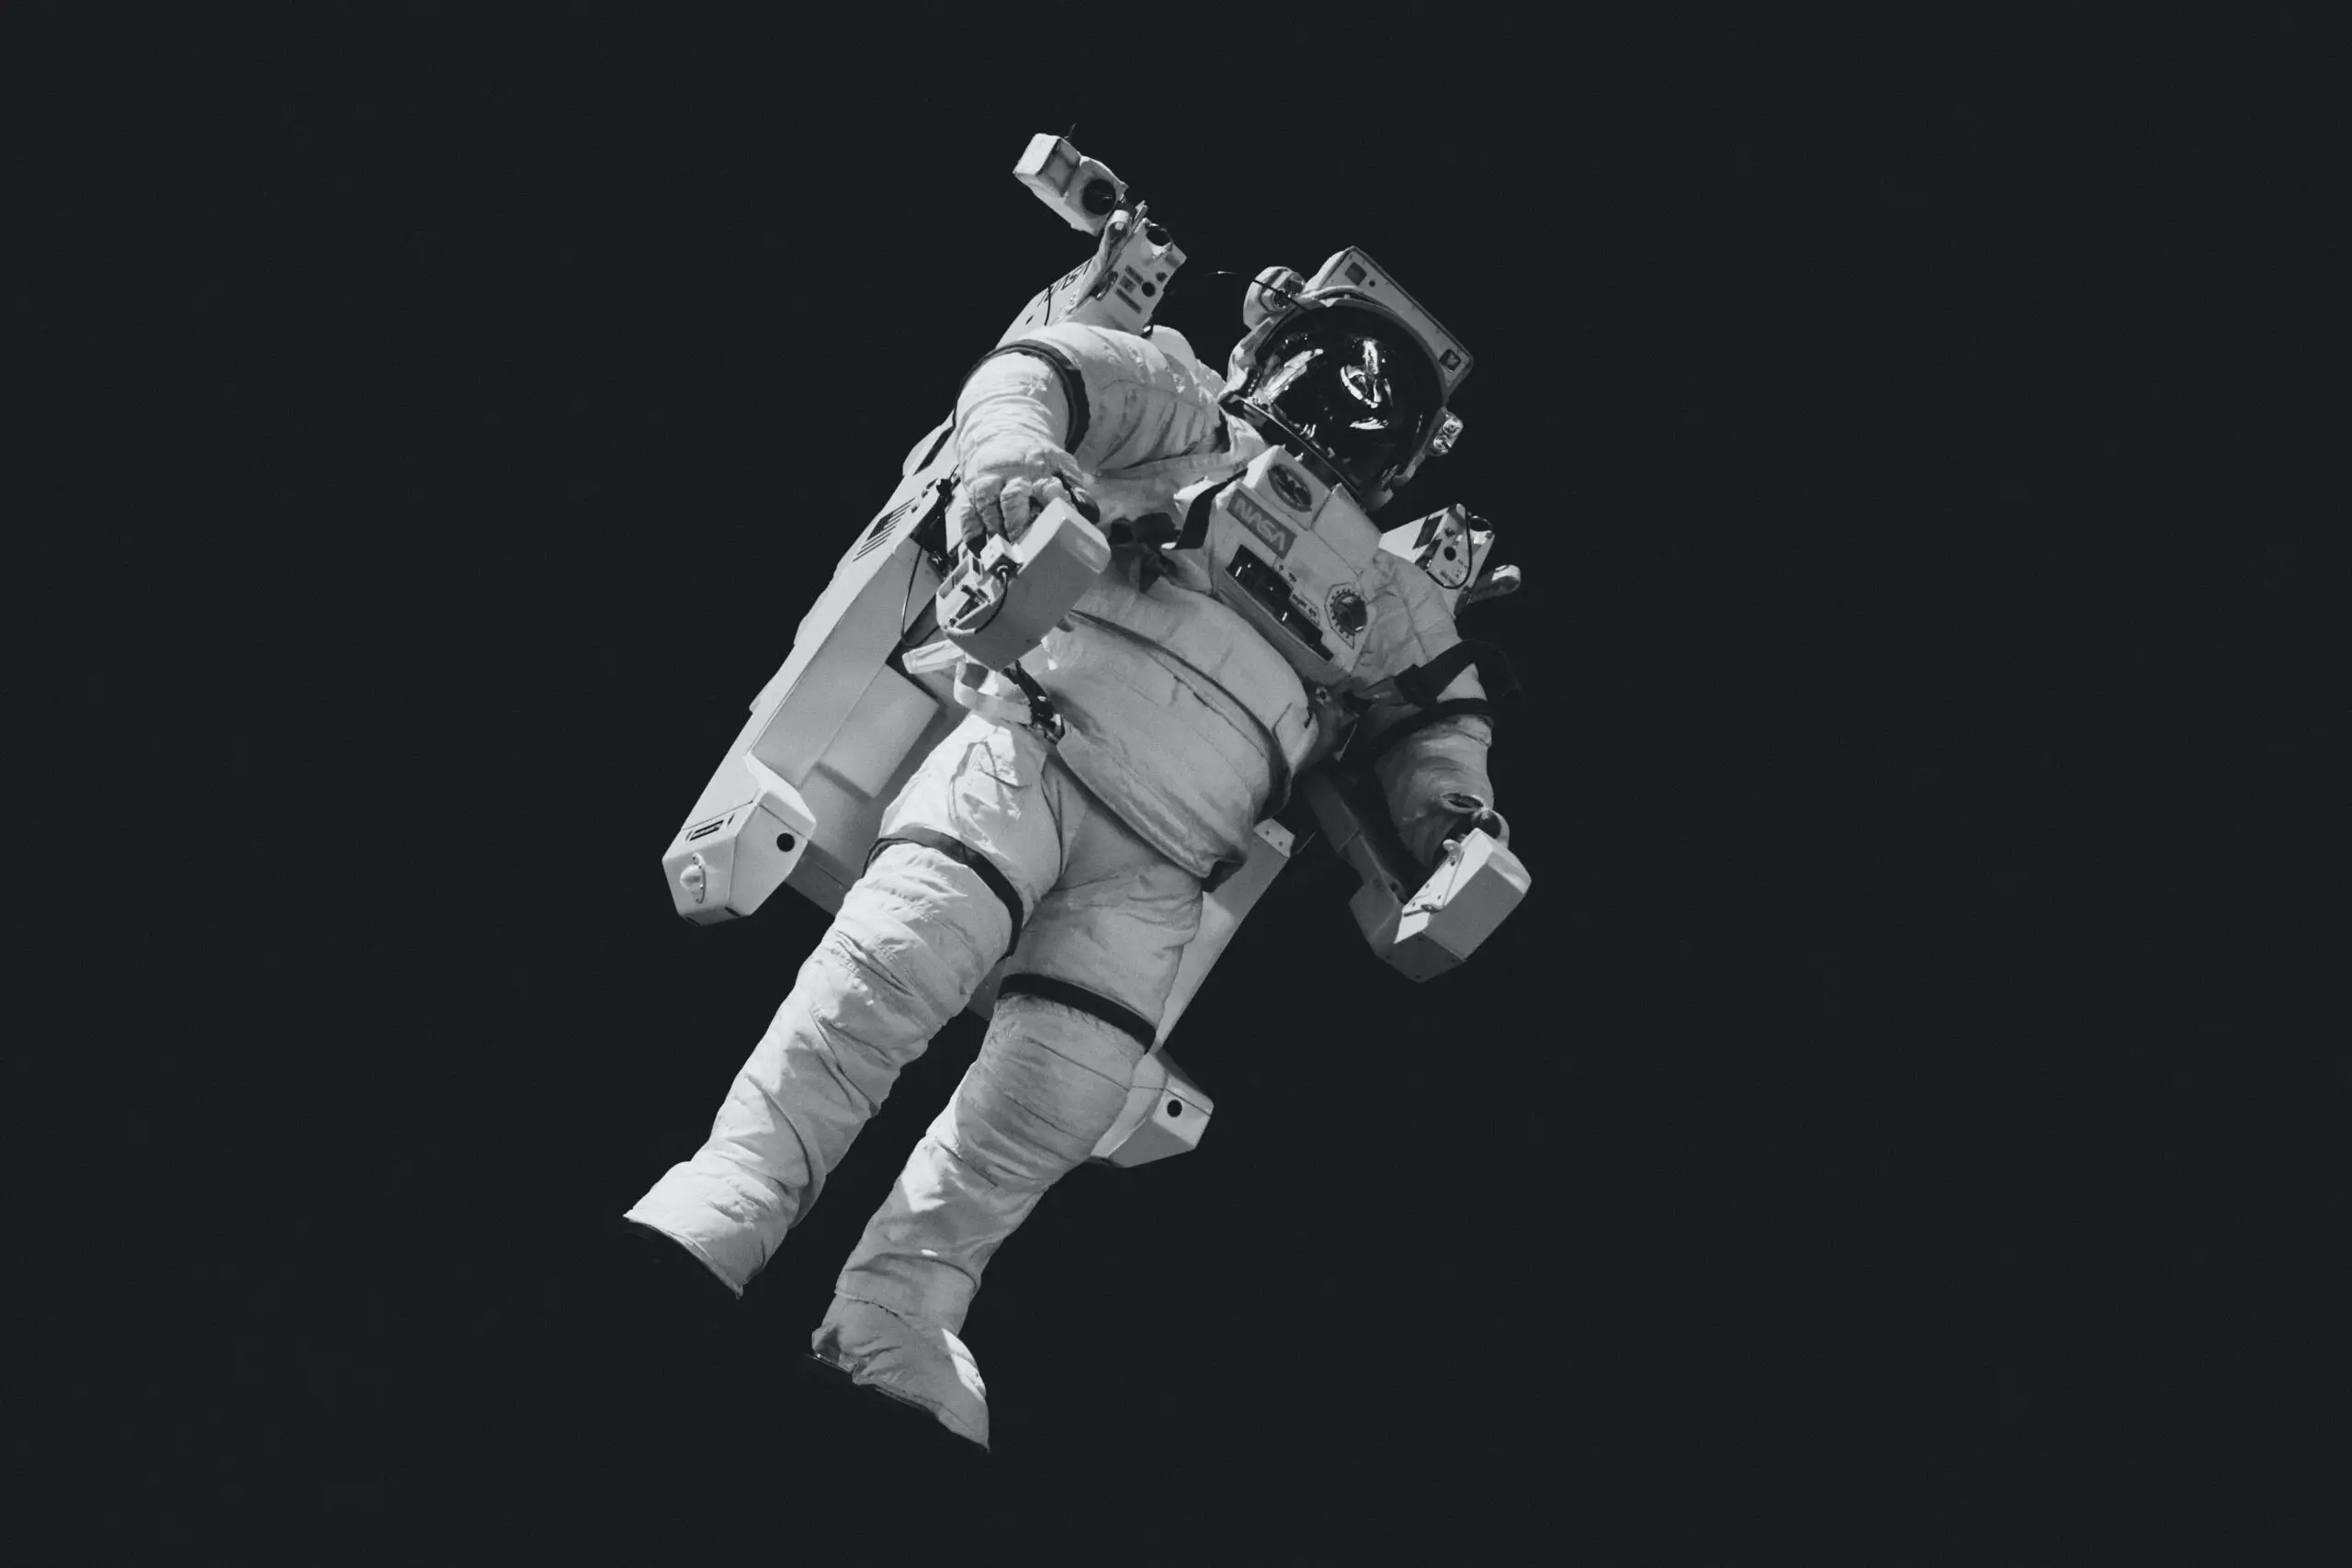 ¿Cuánto tiempo puede durar un ser humano en el espacio exterior sin traje espacial antes de morir? -Revista Interesante